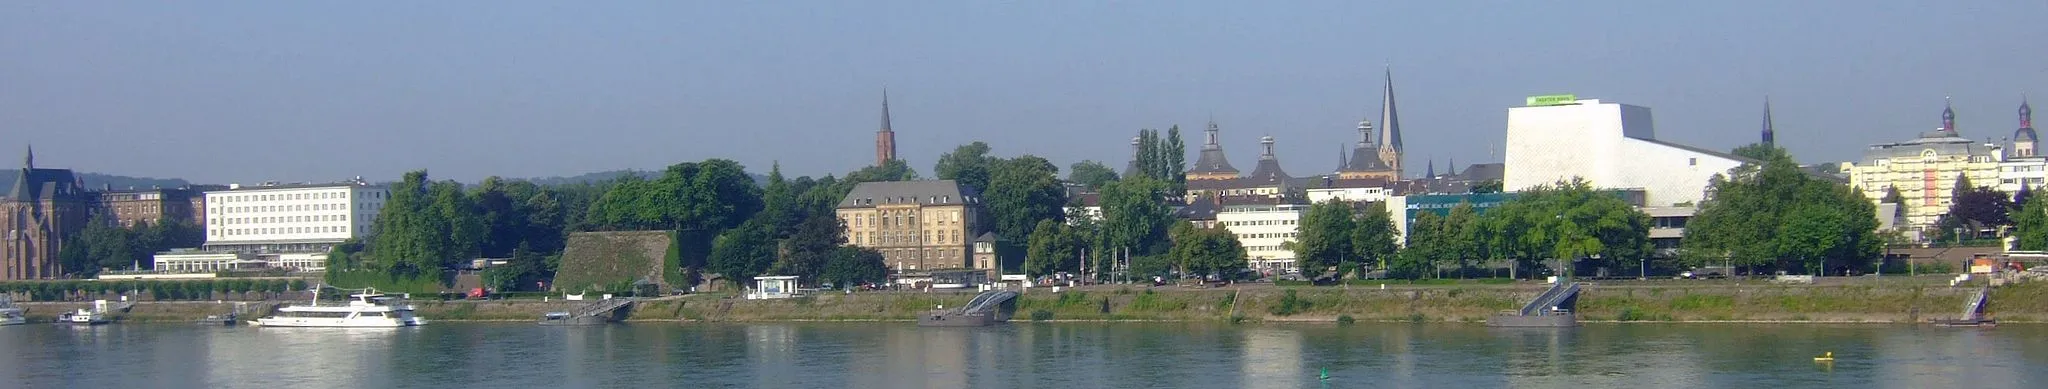 Image of Bonn